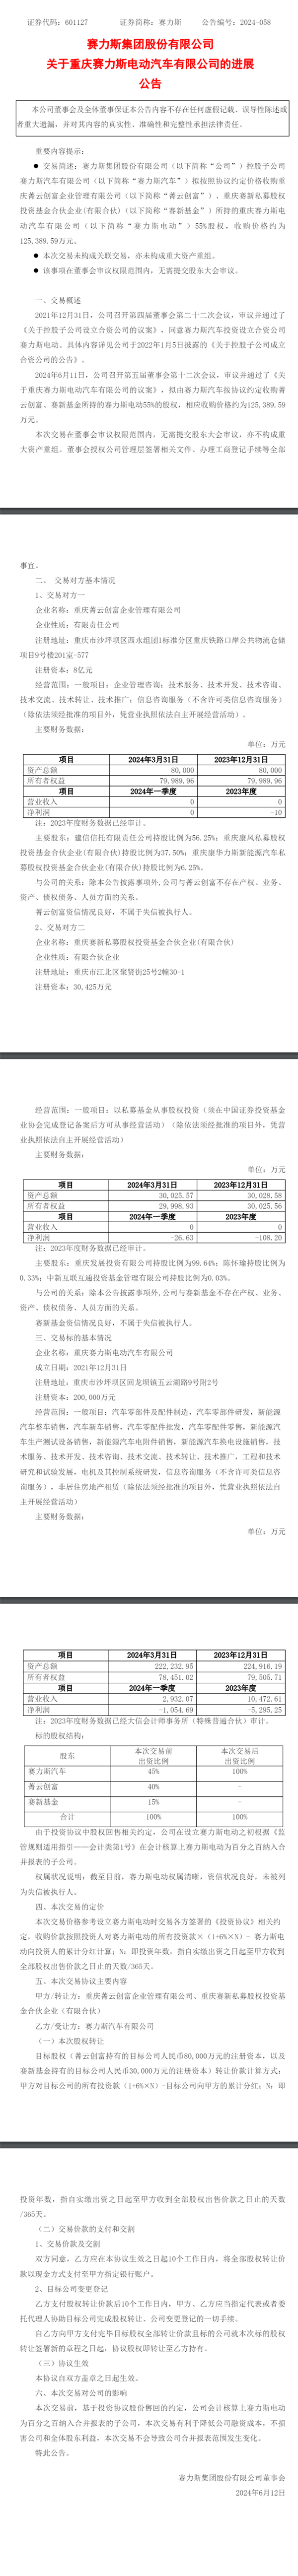 重庆赛力斯汽车计划12.54亿收购赛力斯电动55%股权 